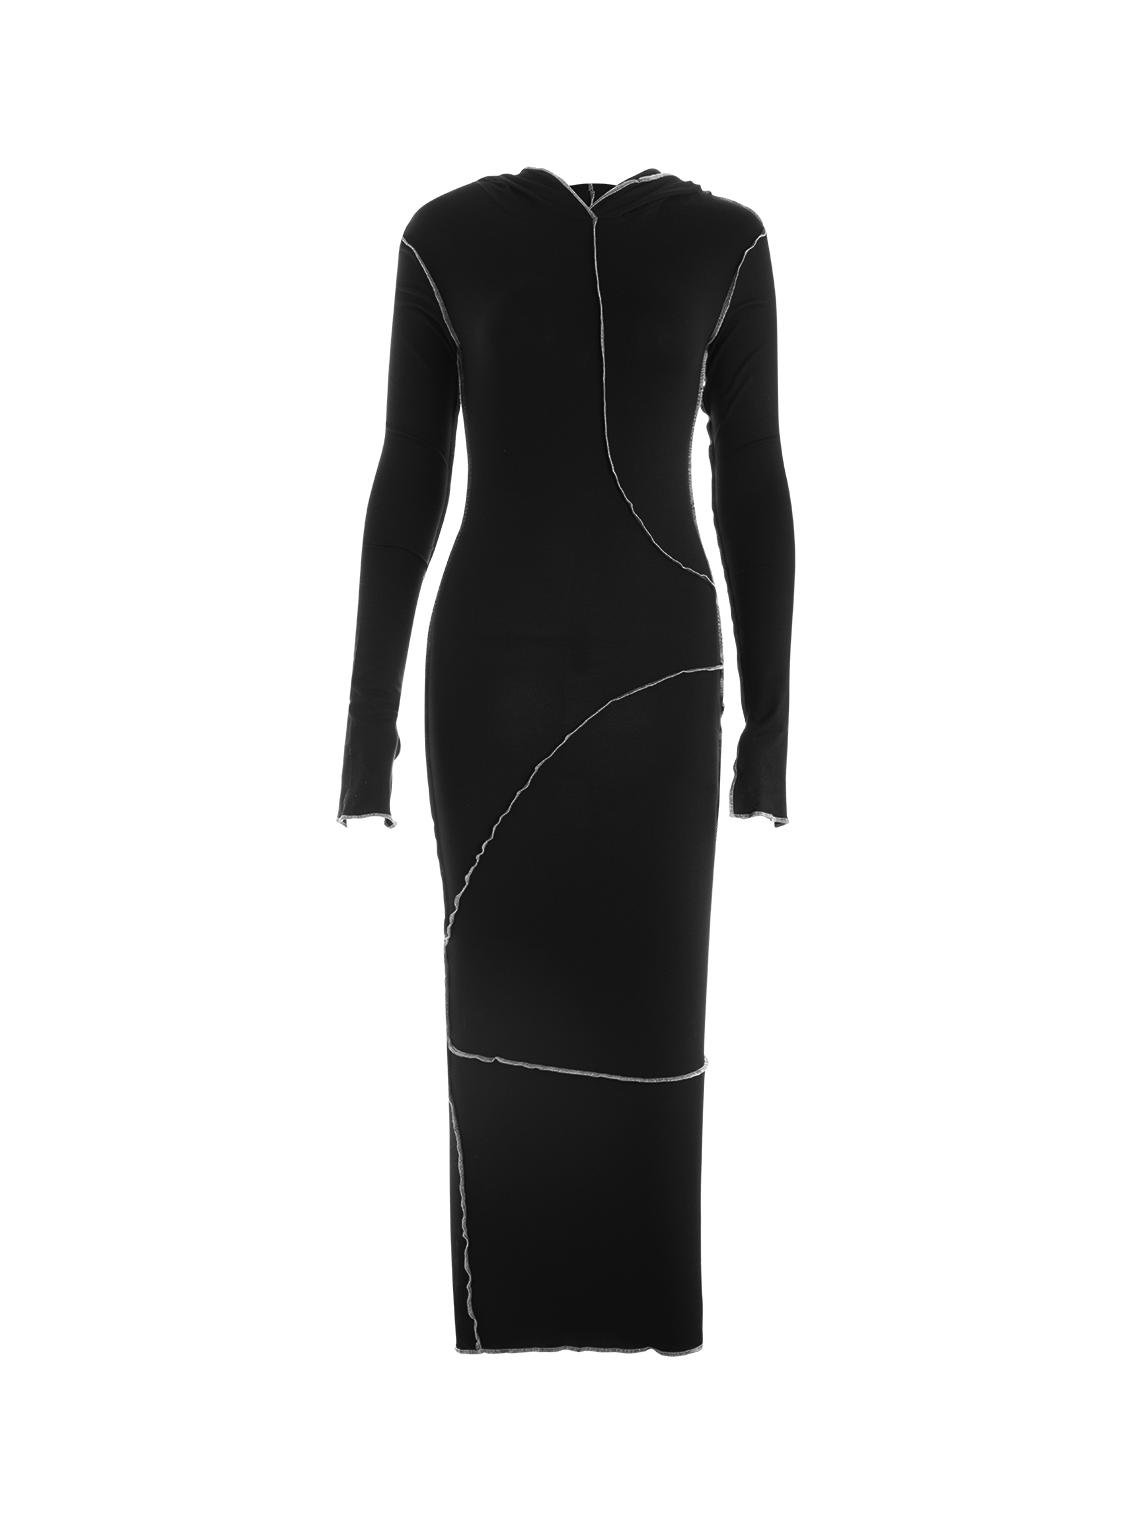 【Final Sale】Edgy Black Raw Edge Plain Dress Midi Dress